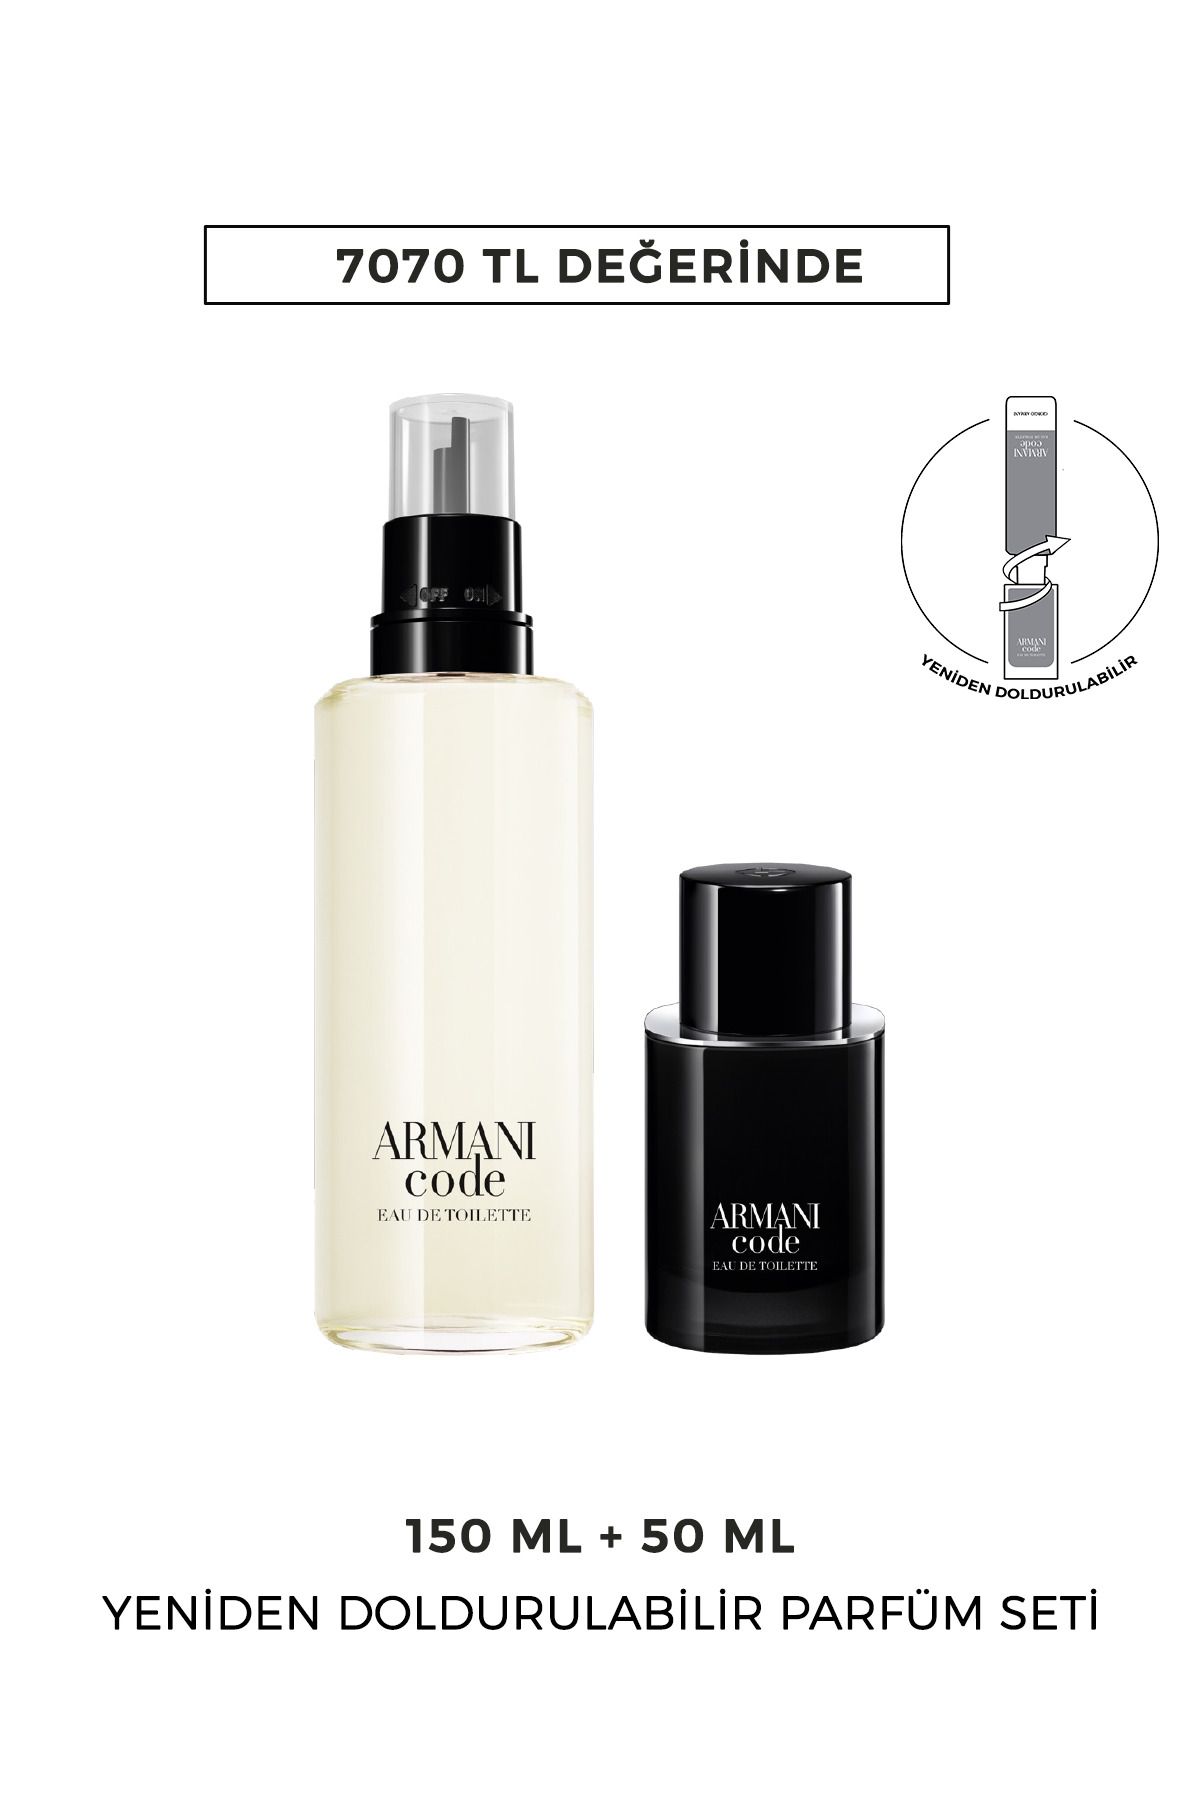 Giorgio Armani Code EDT 50 ml & 150 ml Yeniden Doldurulabilir Erkek Parfüm Seti 7829999999140